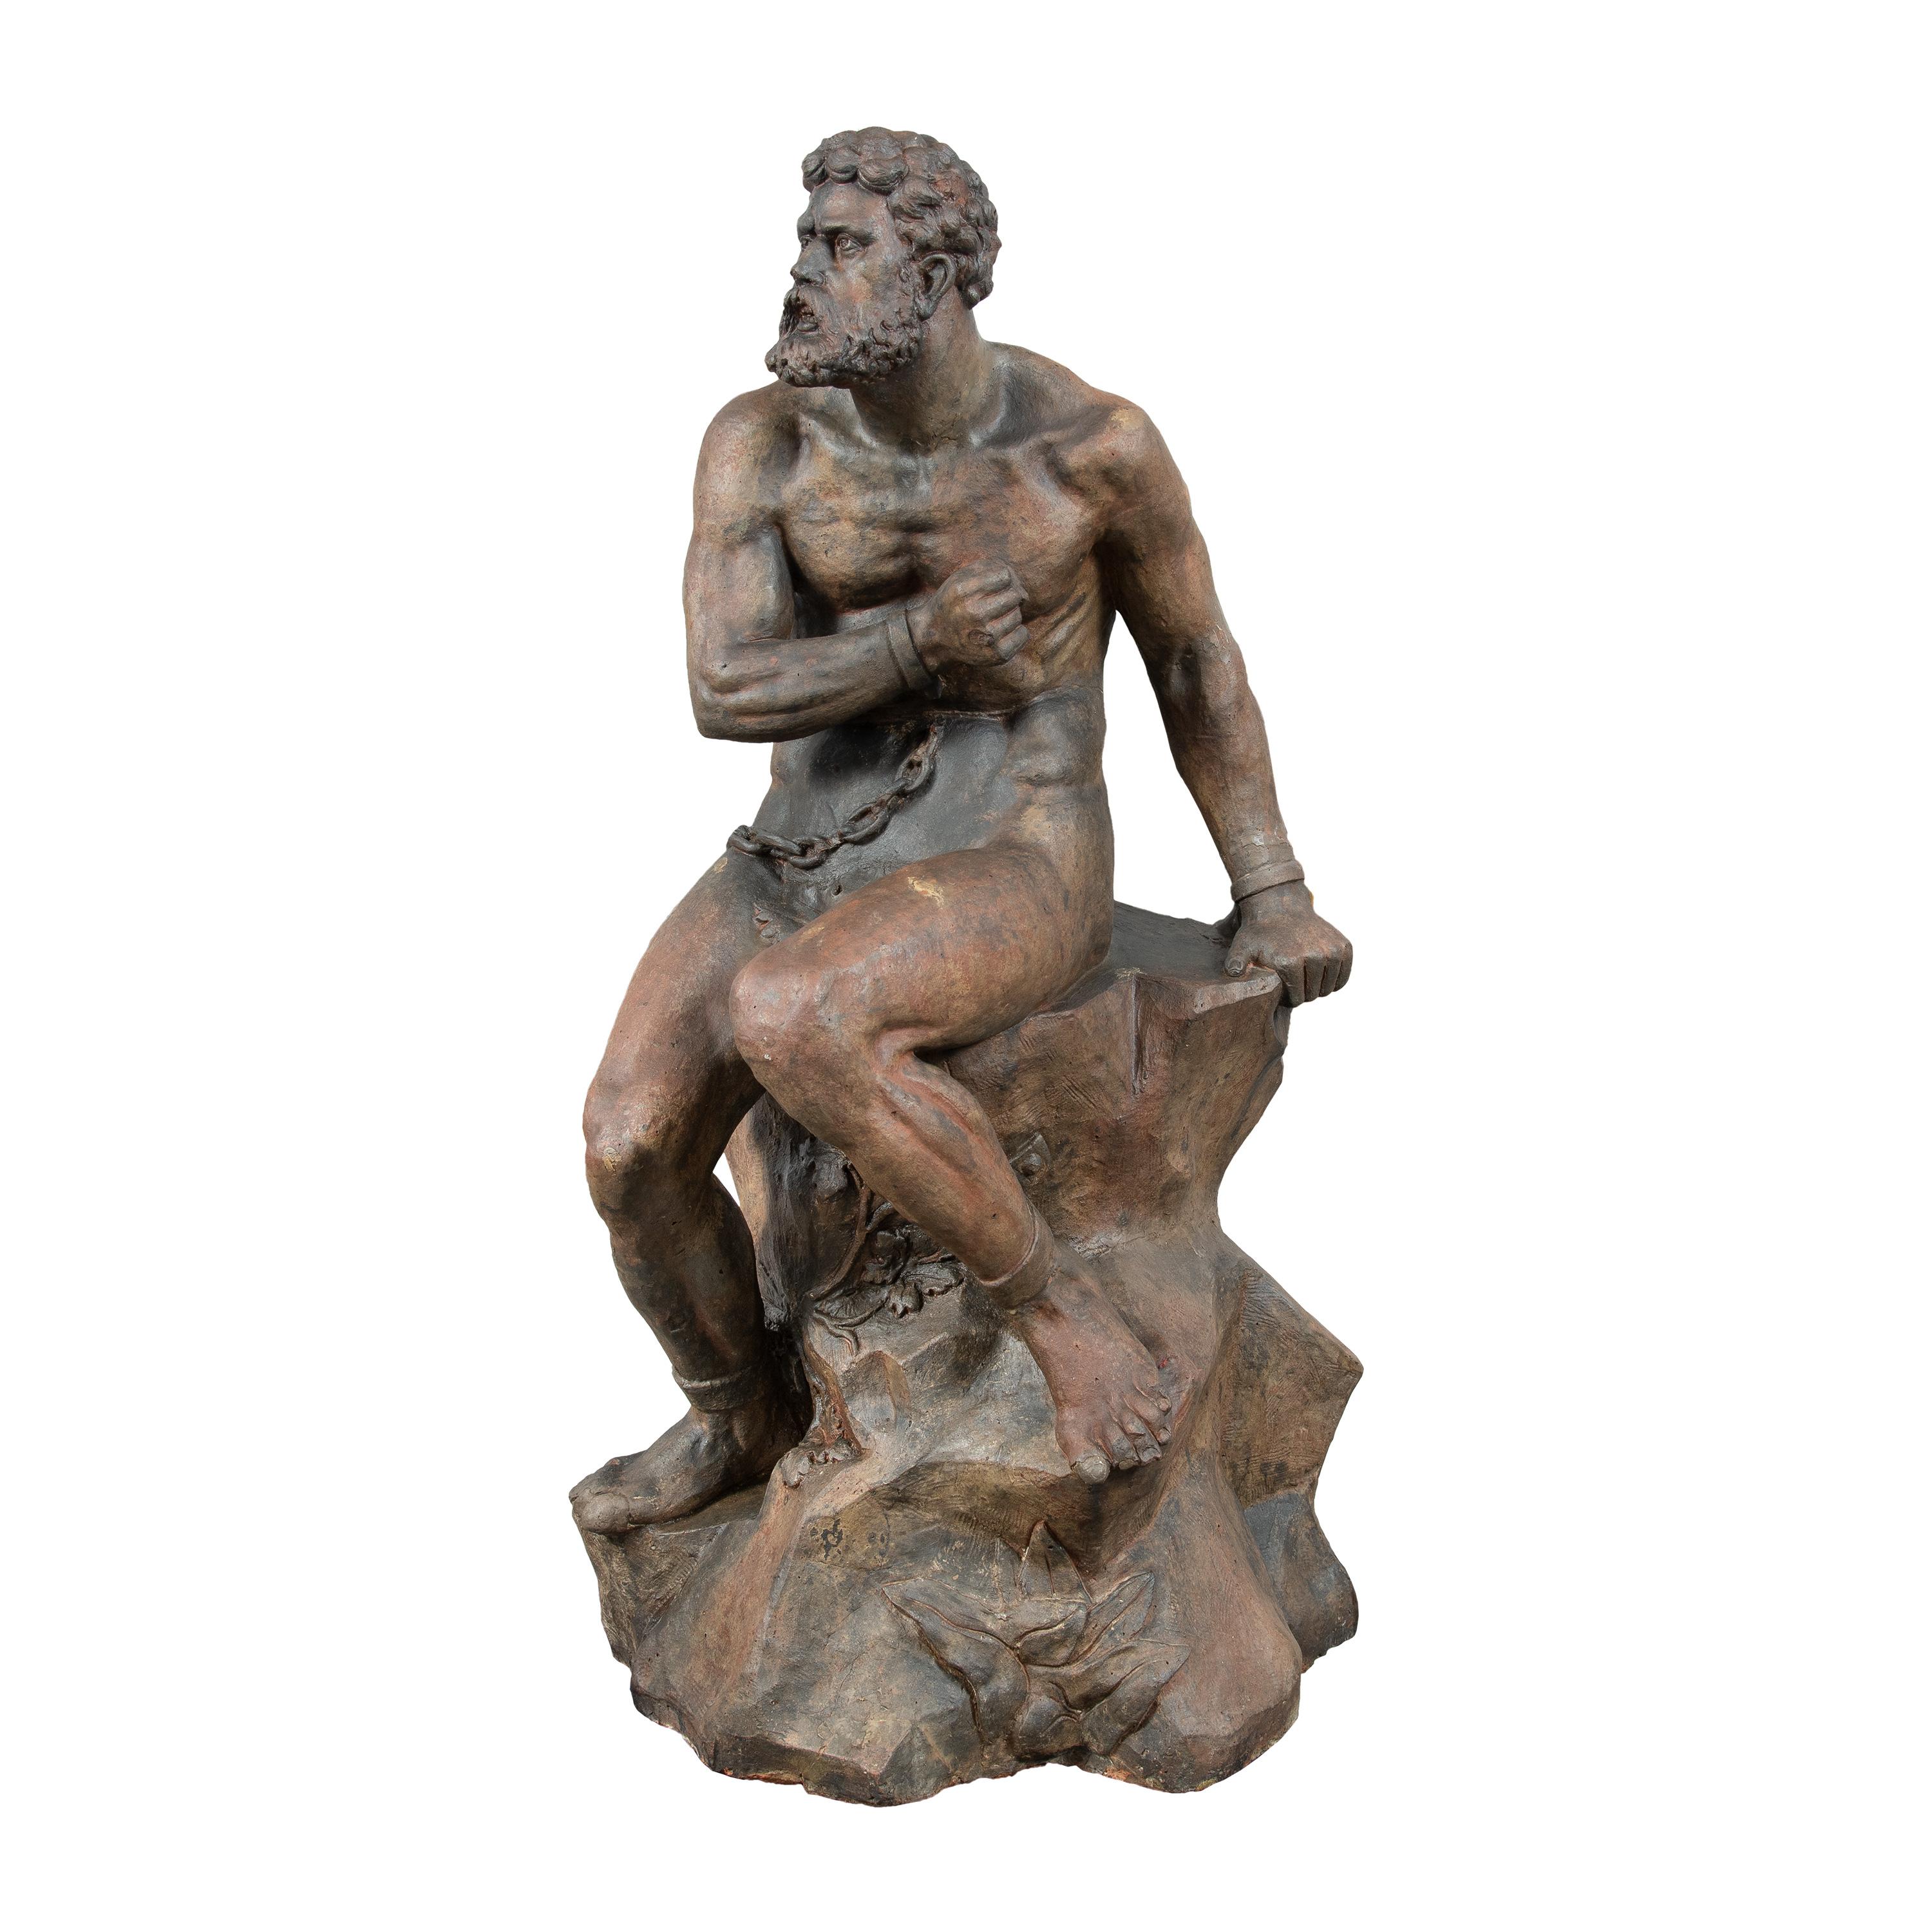 Maître sculpteur baroque - Sculpture en terre cuite du XVIIIe siècle - Figure de Prométhée